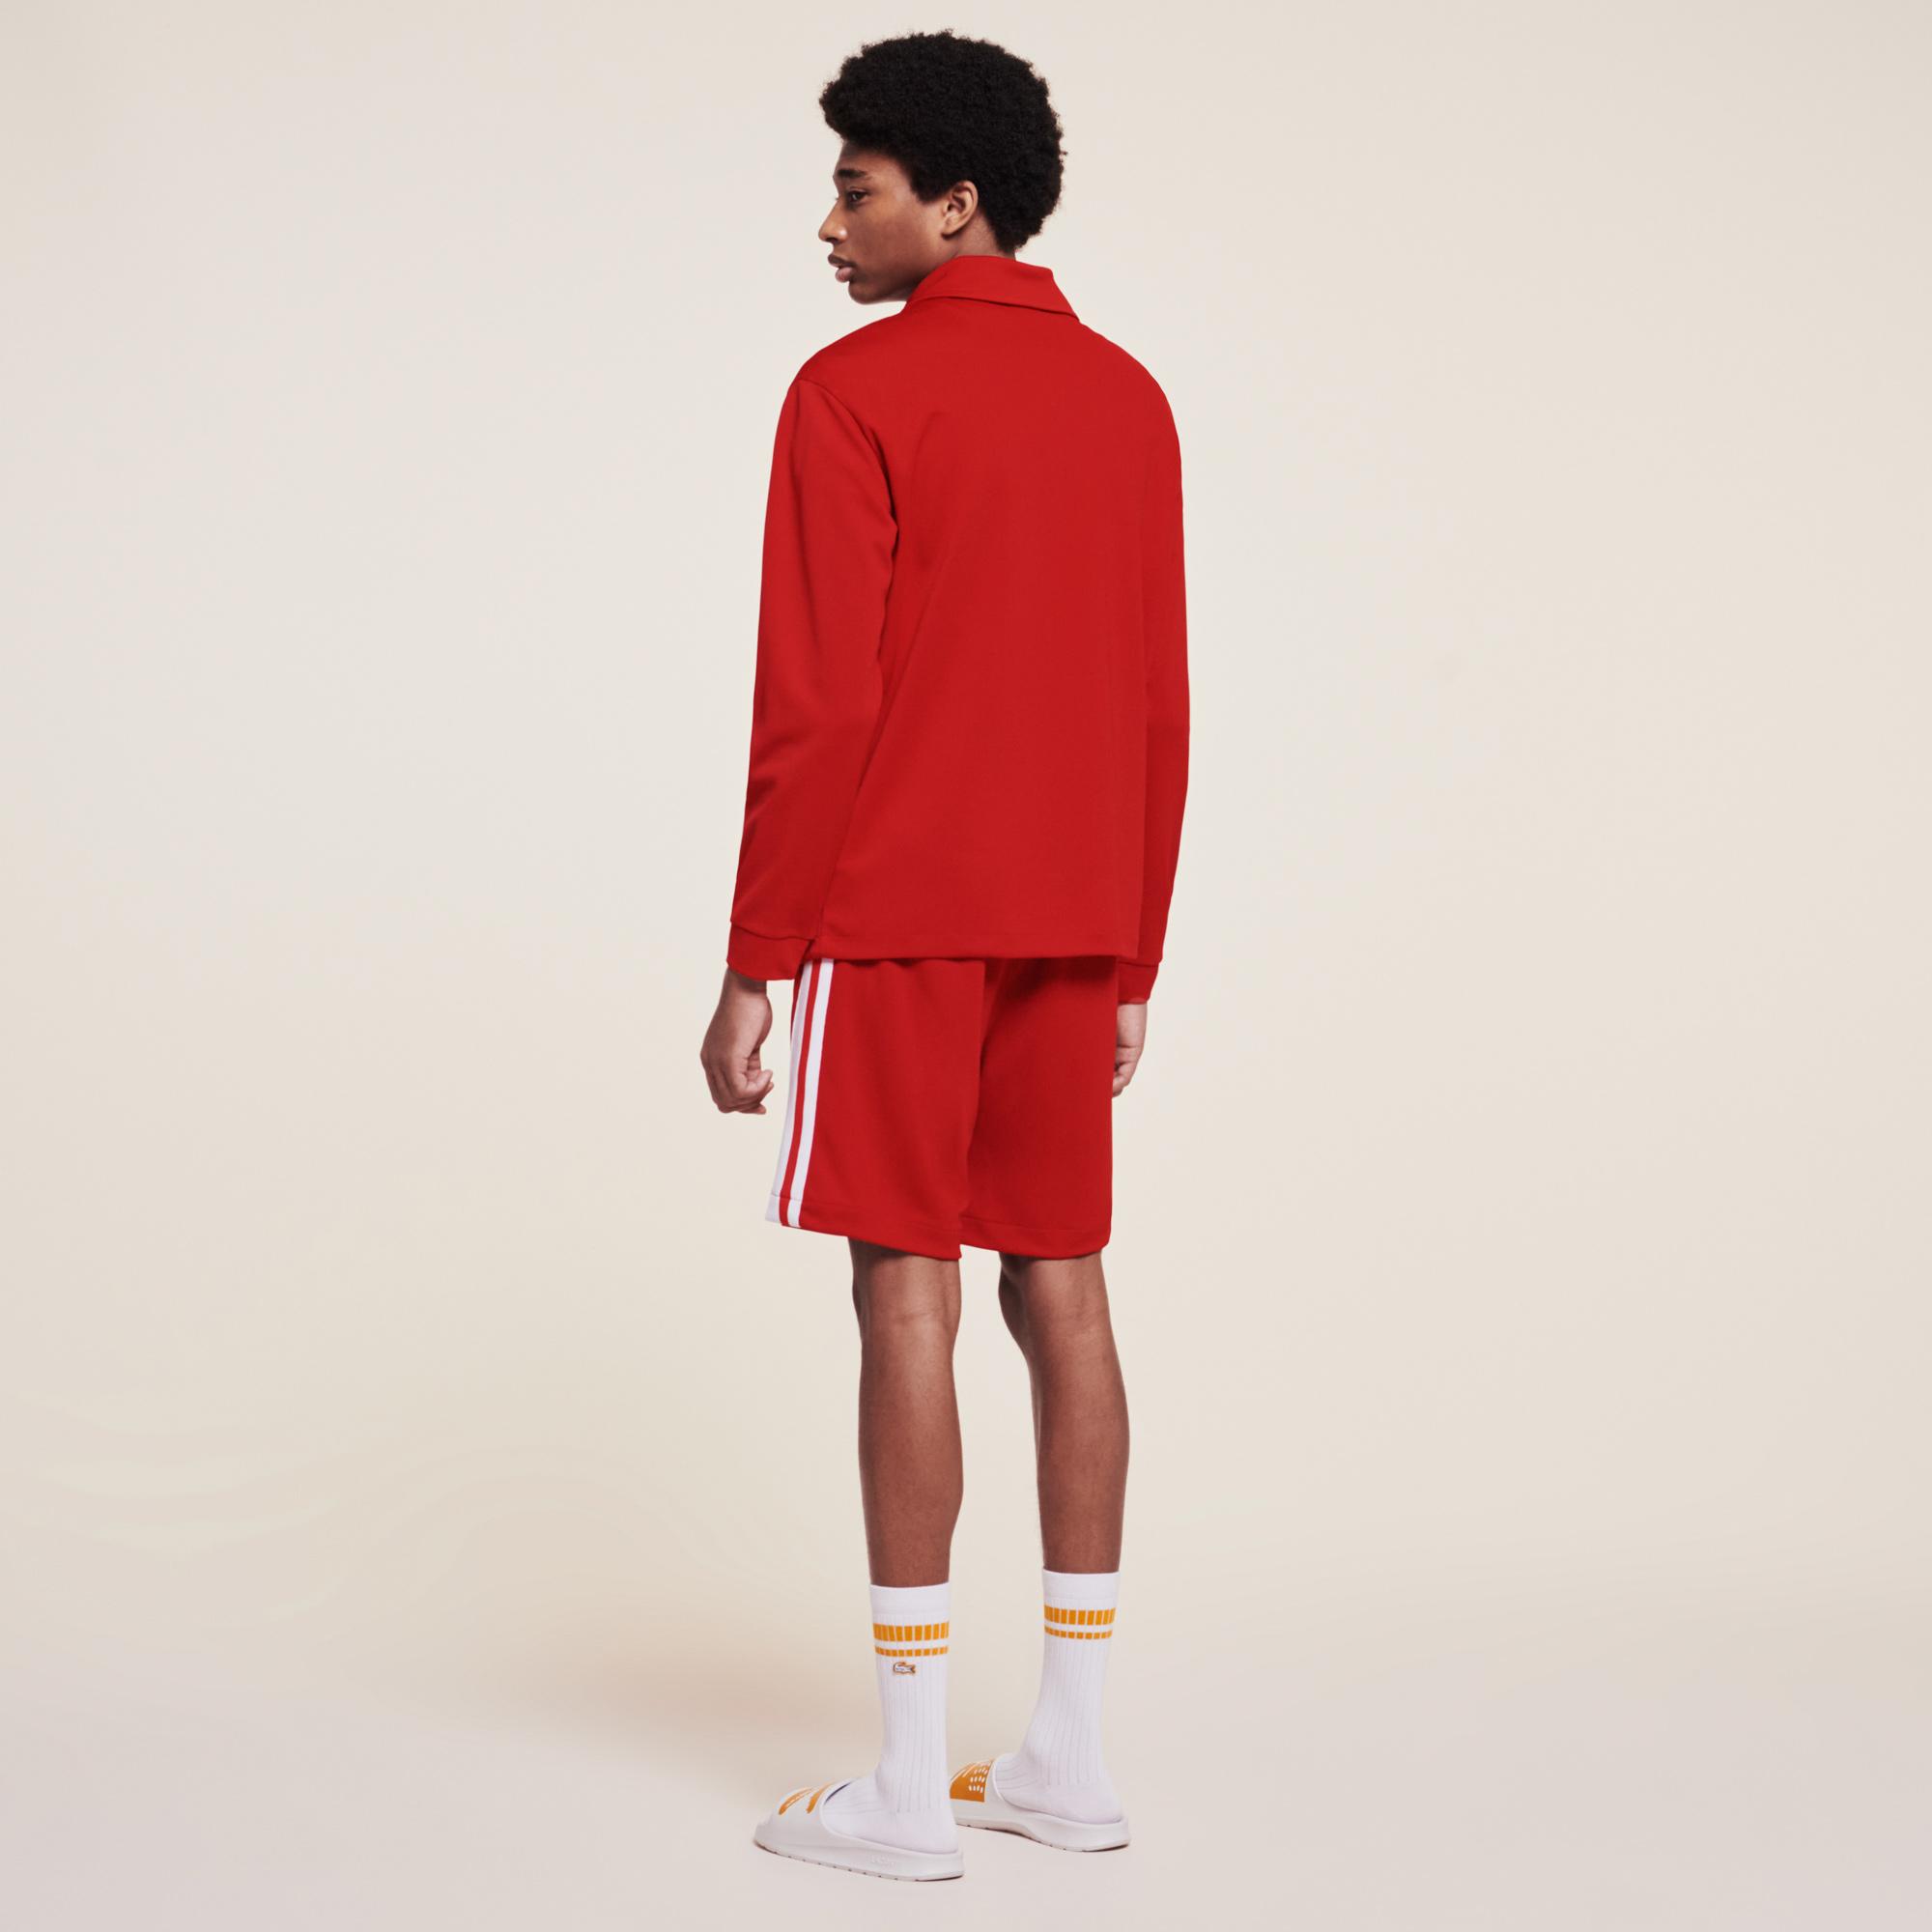 Lacoste x Ricky Regal Erkek Kırmızı Sweatshirt. 4